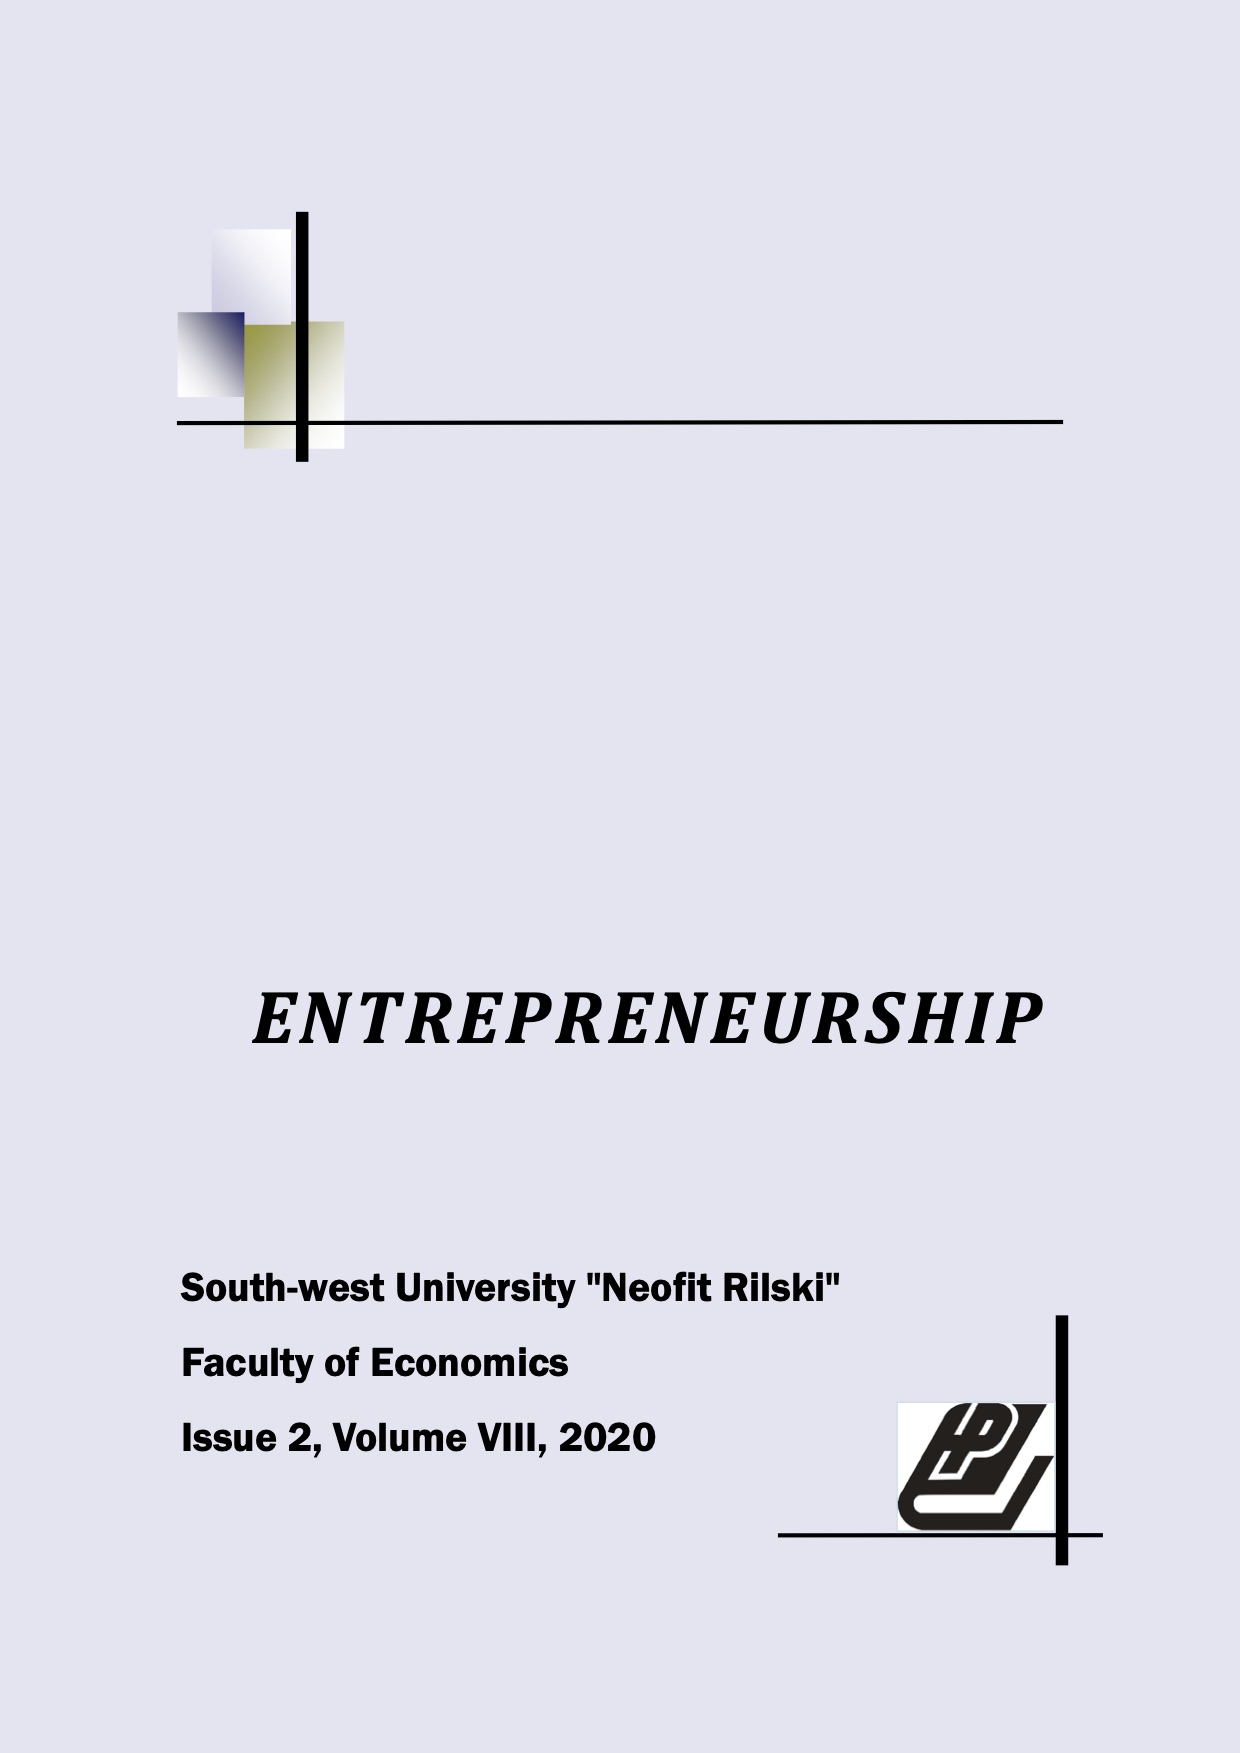 Entrepreneurship Cover Image